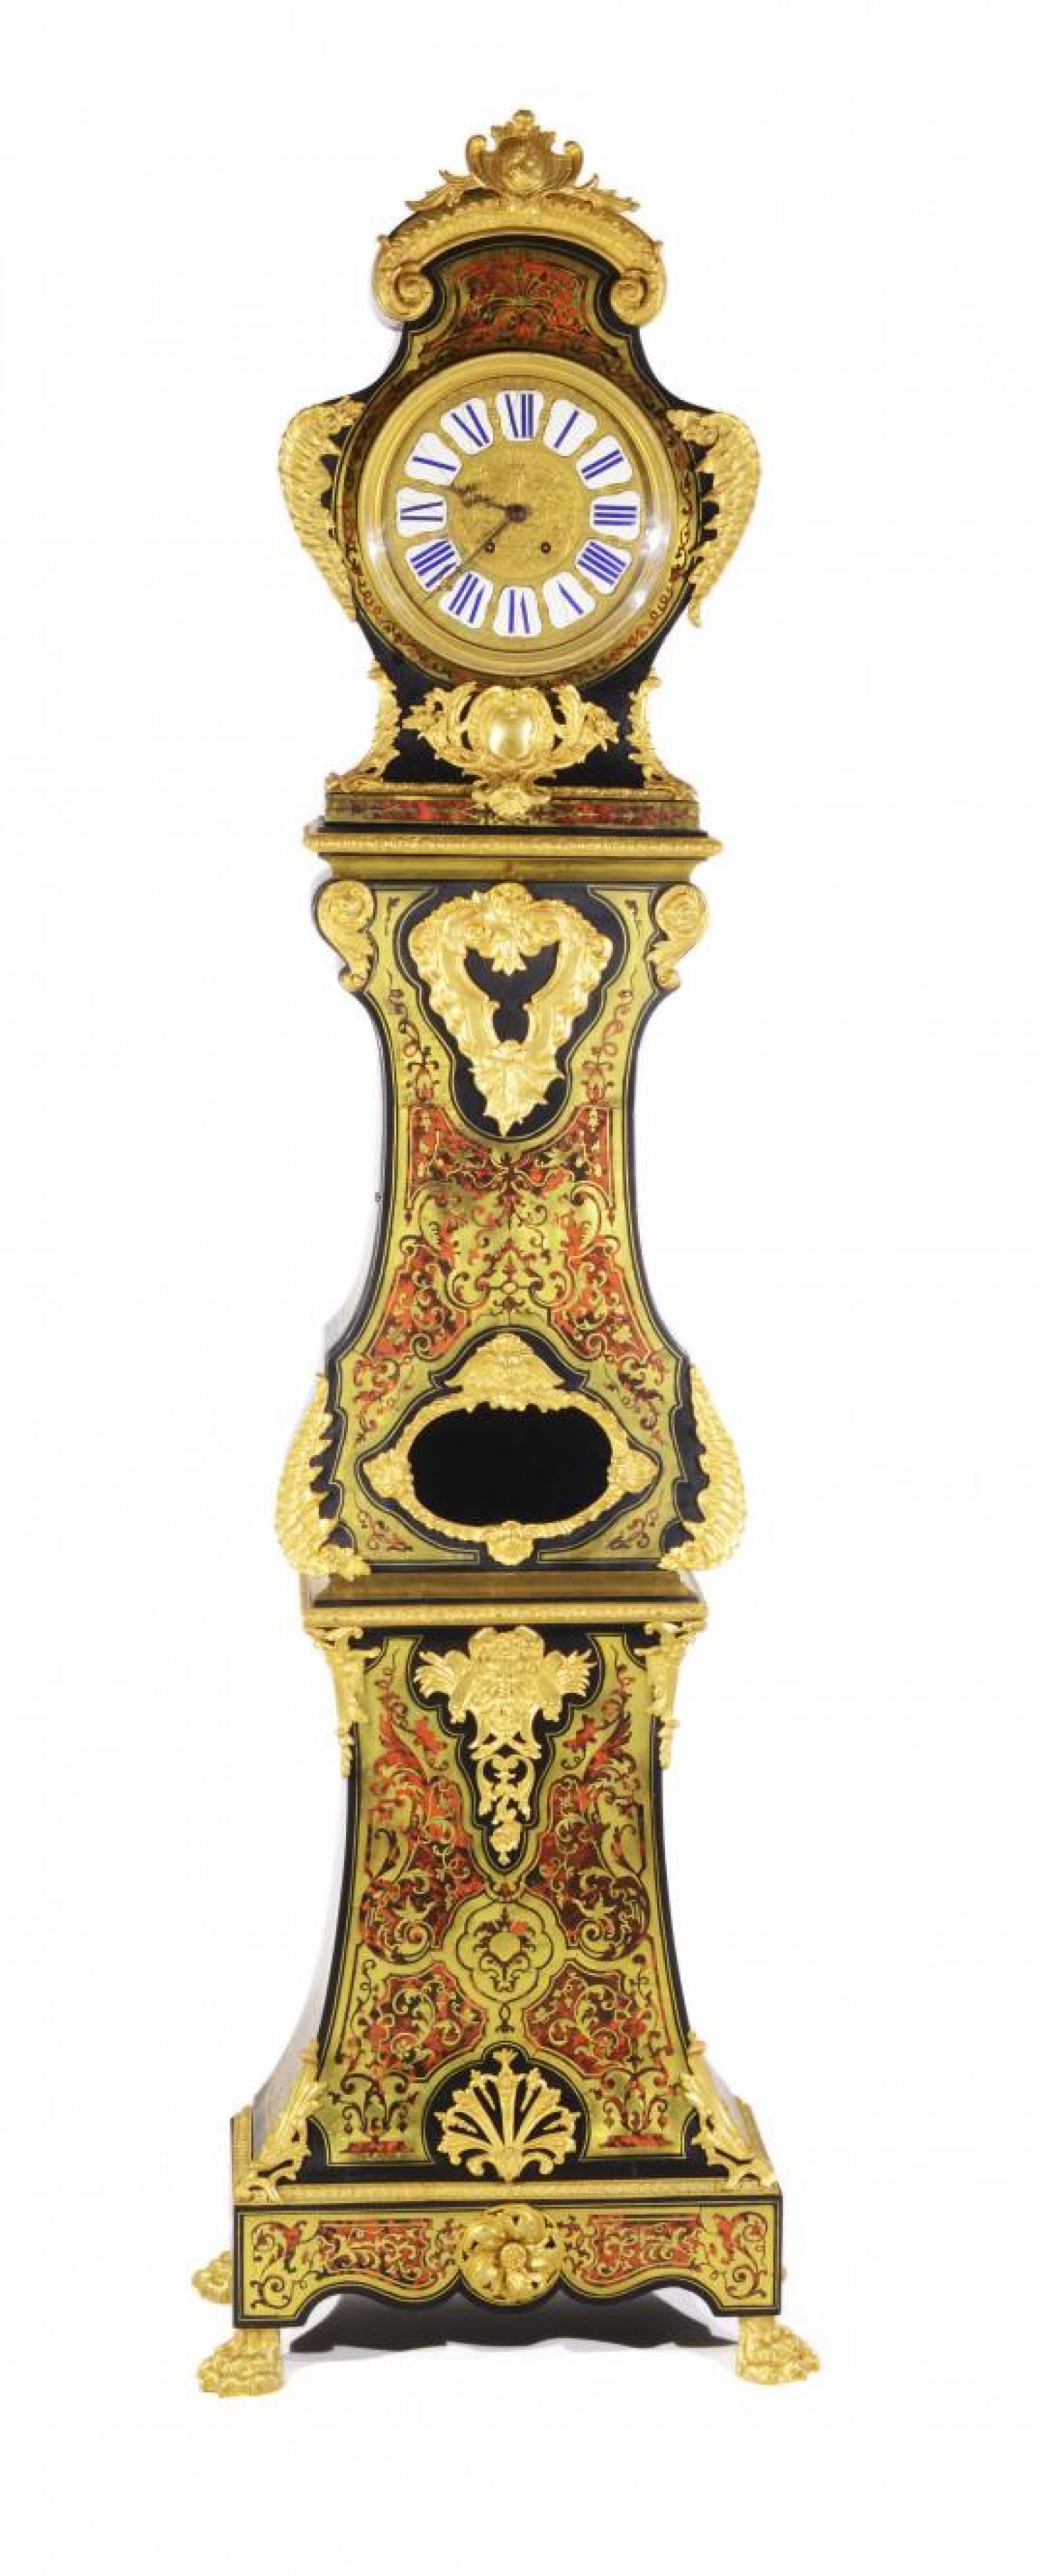 Podlahové hodiny ve stylu Boullé, Francie dřevo, zlacený bronz, výška 224 cm  Zezula 5. 10. 2019 vyvolávací cena: 495 000 Kč (+ 20% provize)